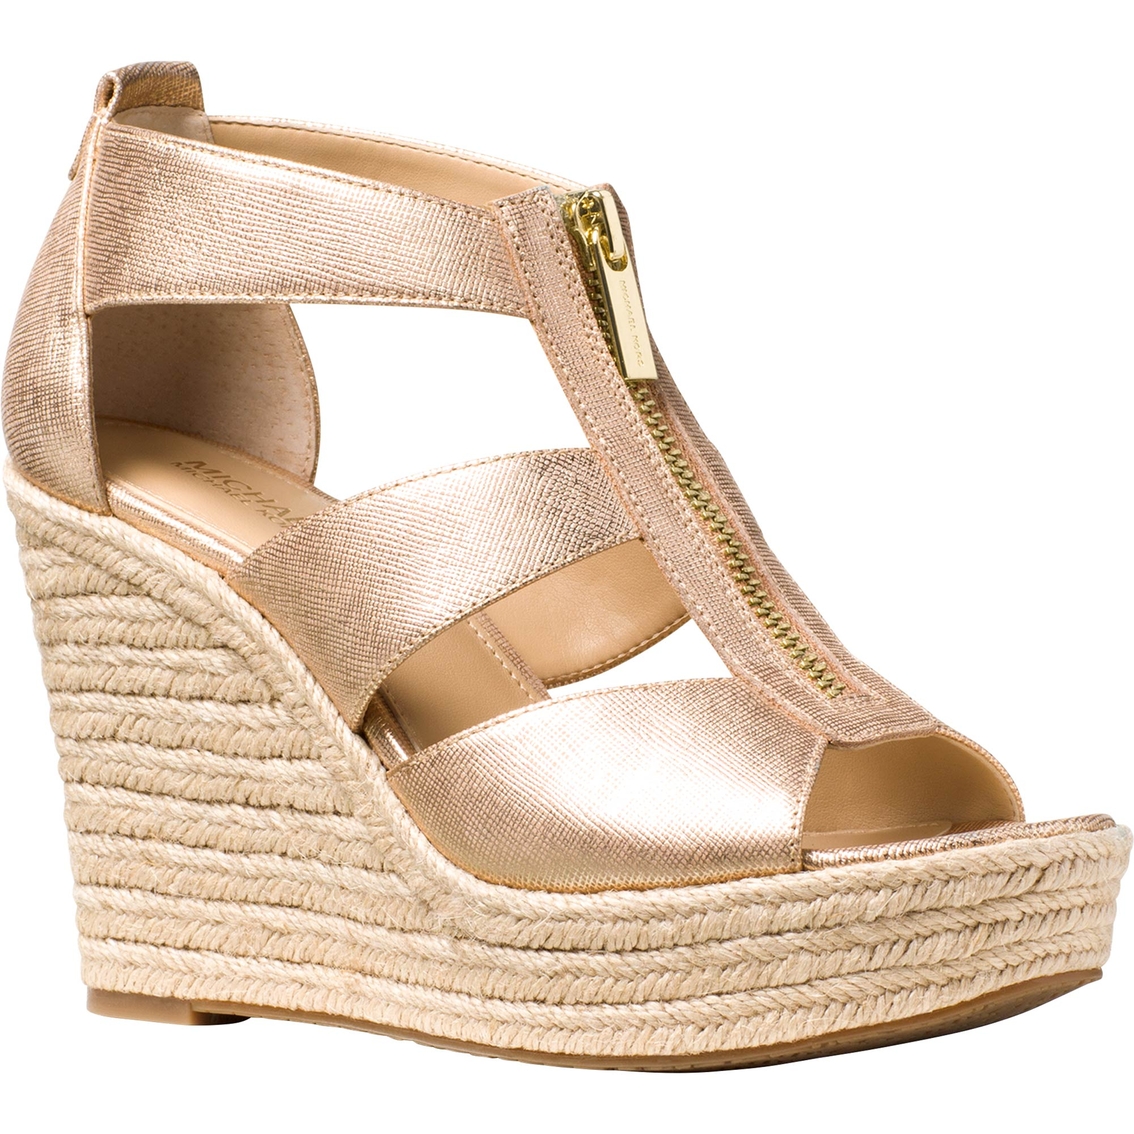 Michael Kors Damita Suede Wedge Heel | Shoes | Shop The Exchange